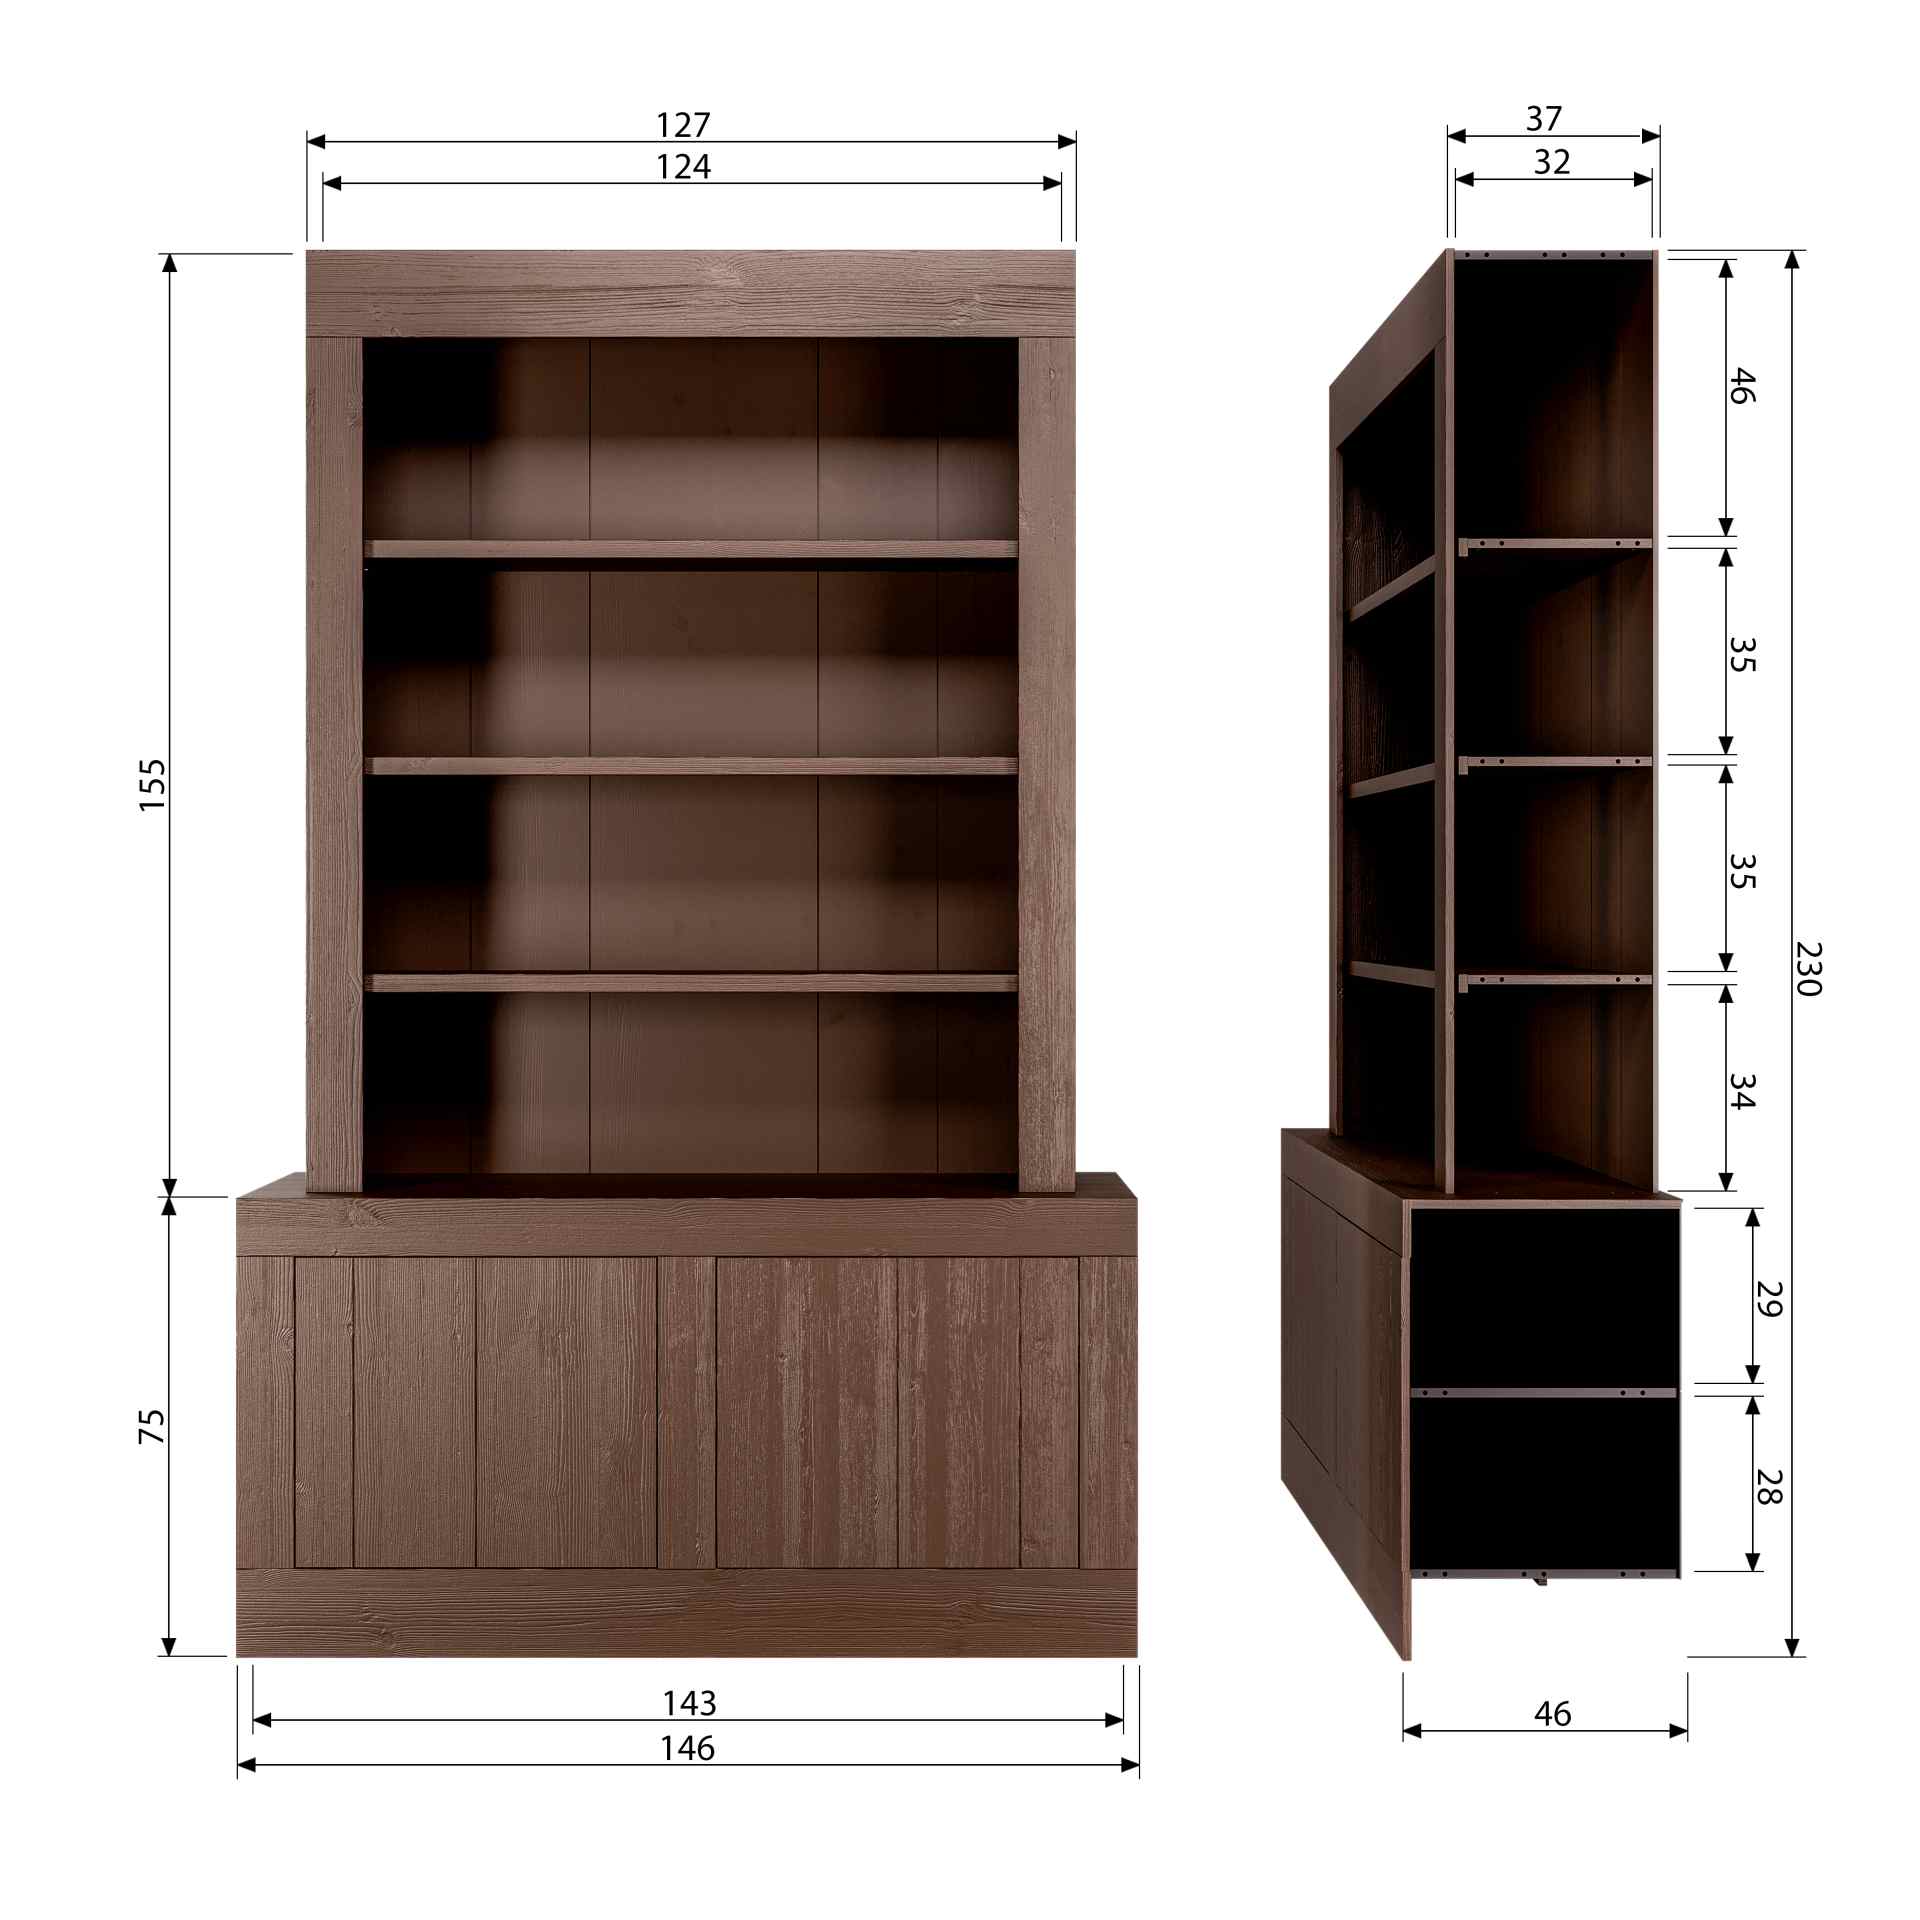 Der Buffetschrank Yumi überzeugt mit seinem modernem Design. Gefertigt wurde er aus Kiefernholz, welches einen braunen Farbton besitzt. Der Schrank verfügt über zwei Türen und drei offene Fächer. Die Breite beträgt 146 cm.